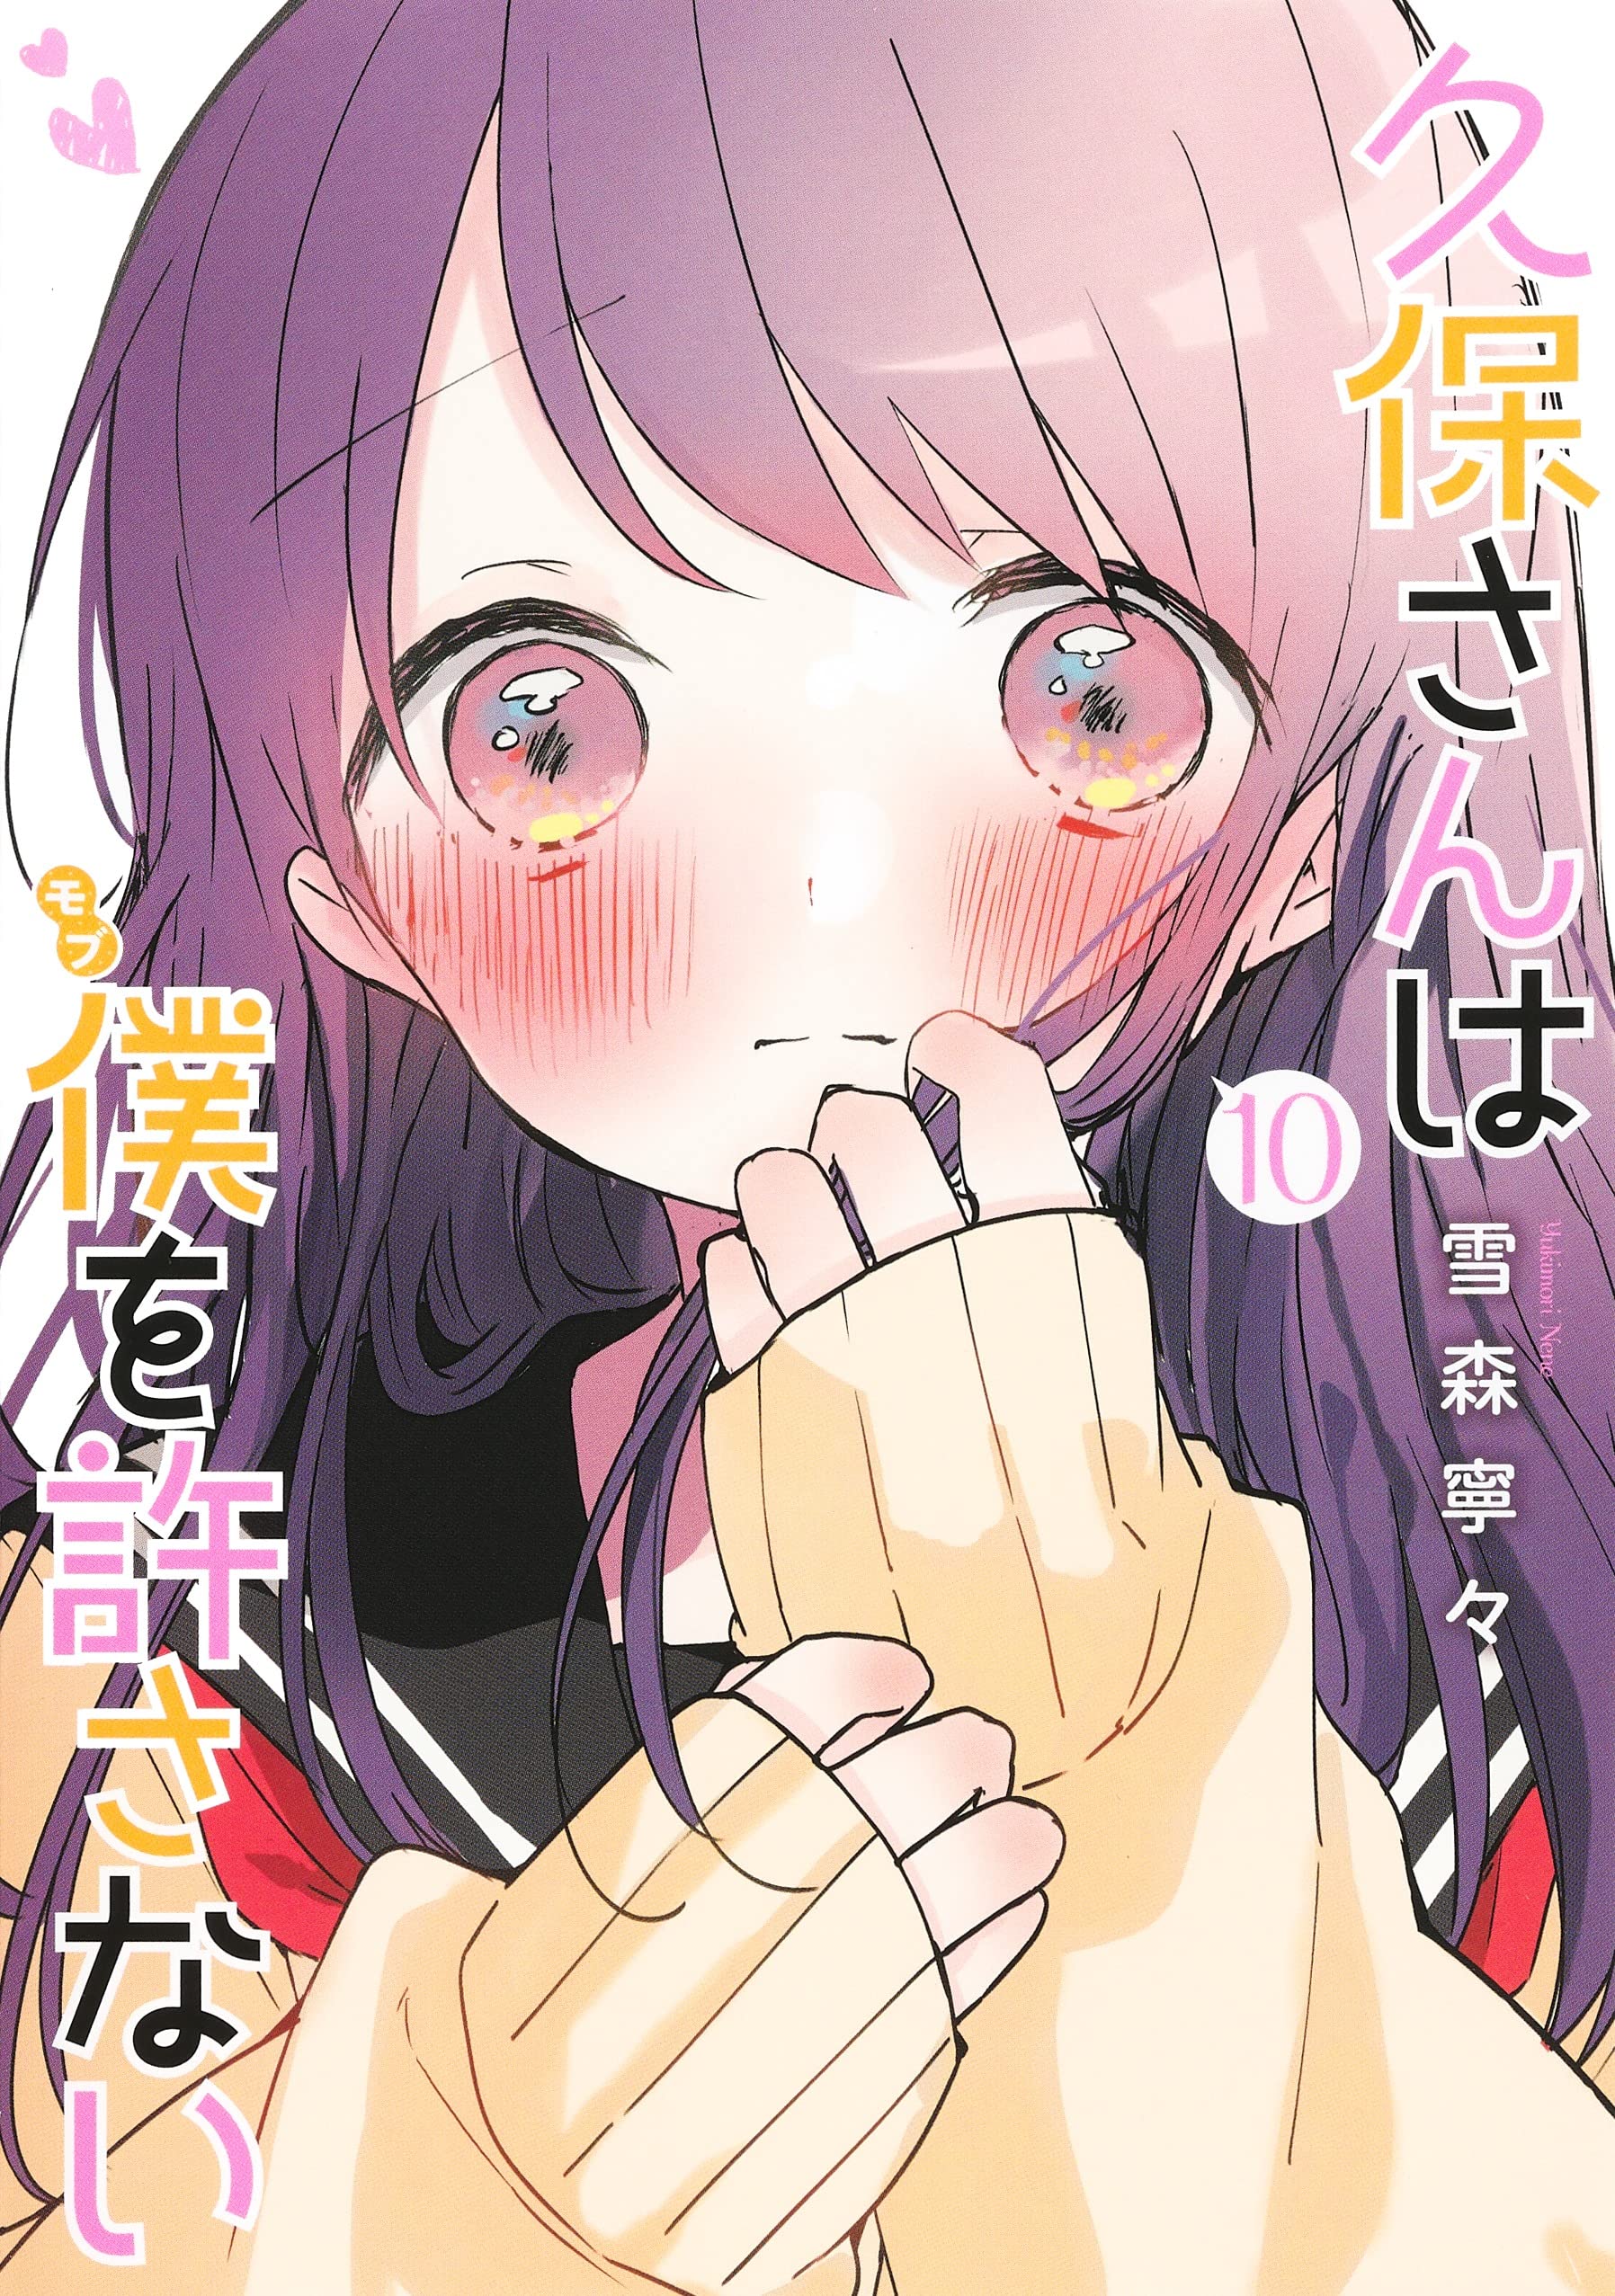 Manga Kubo-san wa Mob wo Yurusanai Terão Adaptação para ANime - Nerding